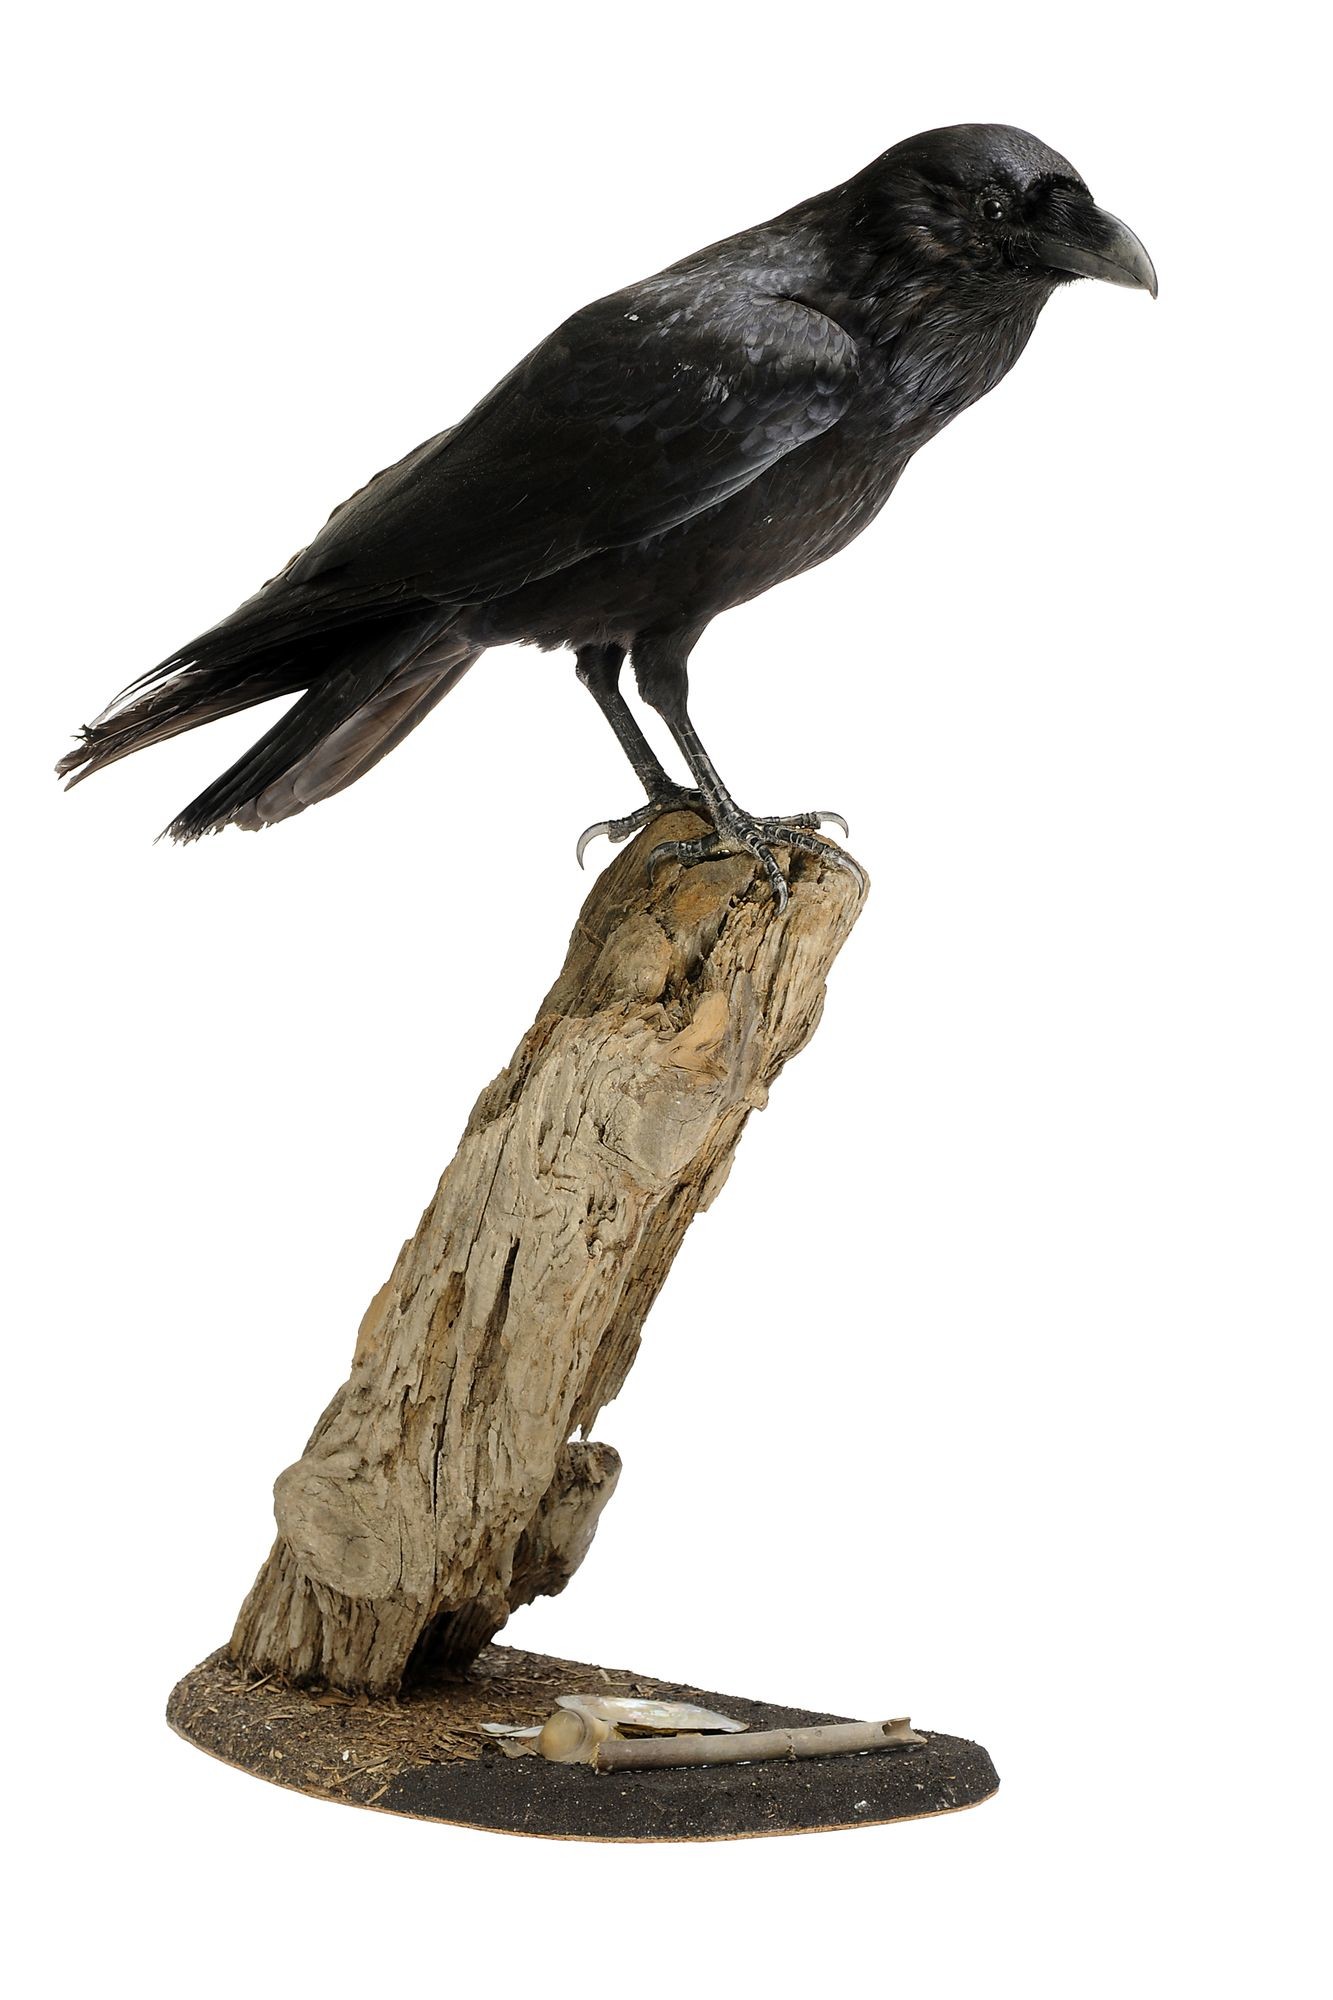 Holló corvus corax (Rippl-Rónai Múzeum CC BY-NC-SA)